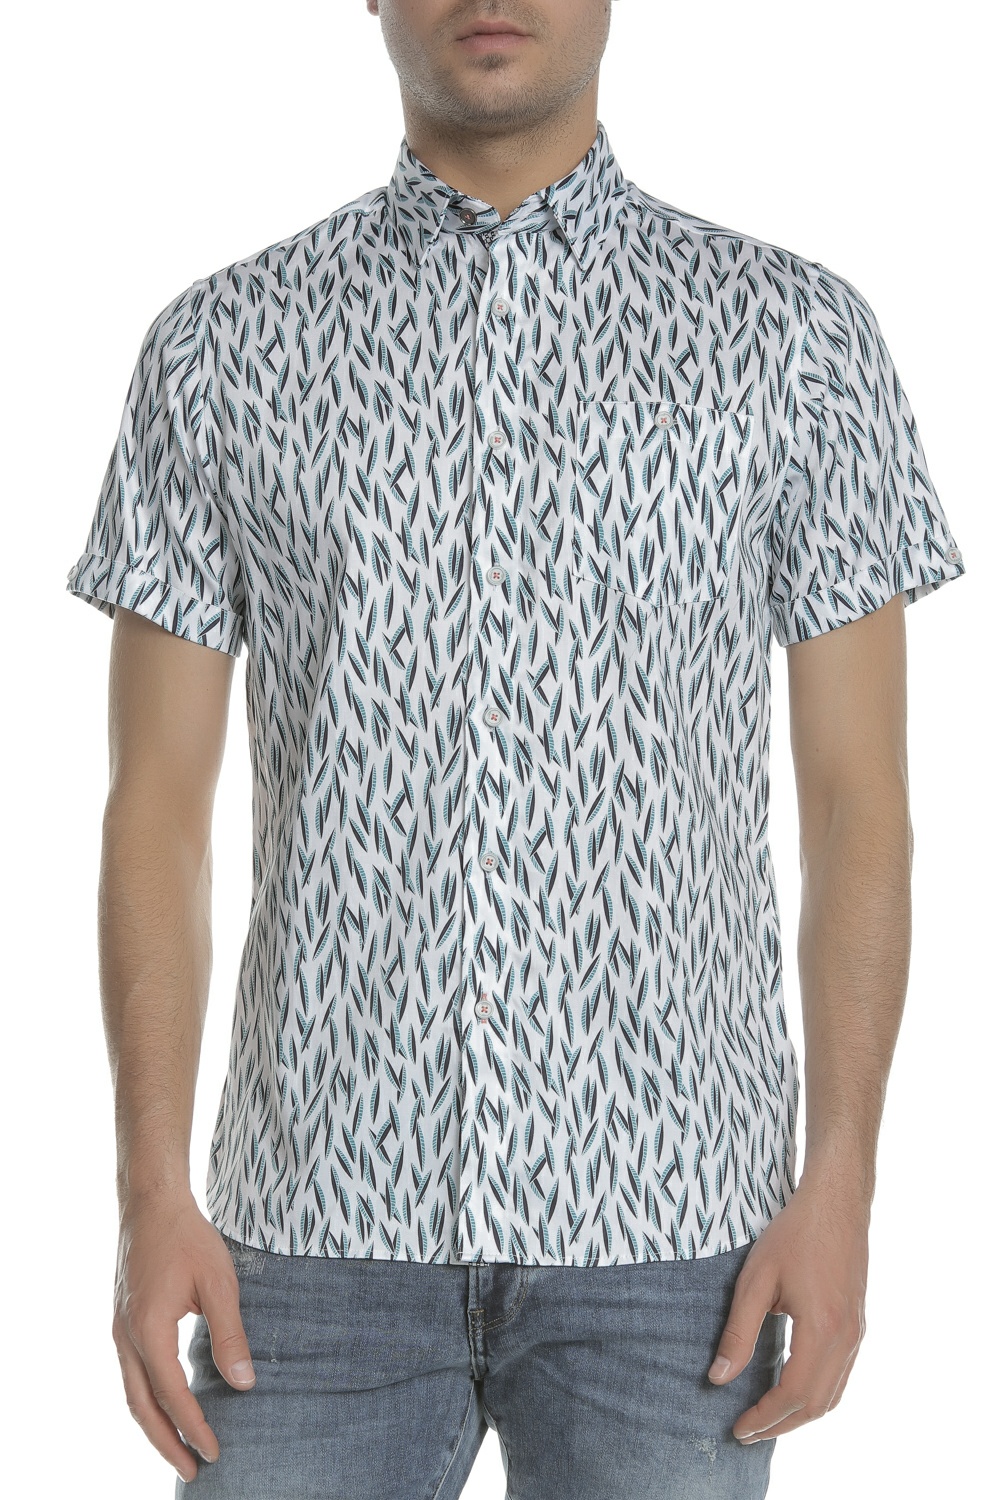 TED BAKER - Ανδρικό κοντομάνικο πουκάμισο TED BAKER WOOLRUS λευκό-μπλε Ανδρικά/Ρούχα/Πουκάμισα/Κοντομάνικα-Αμάνικα